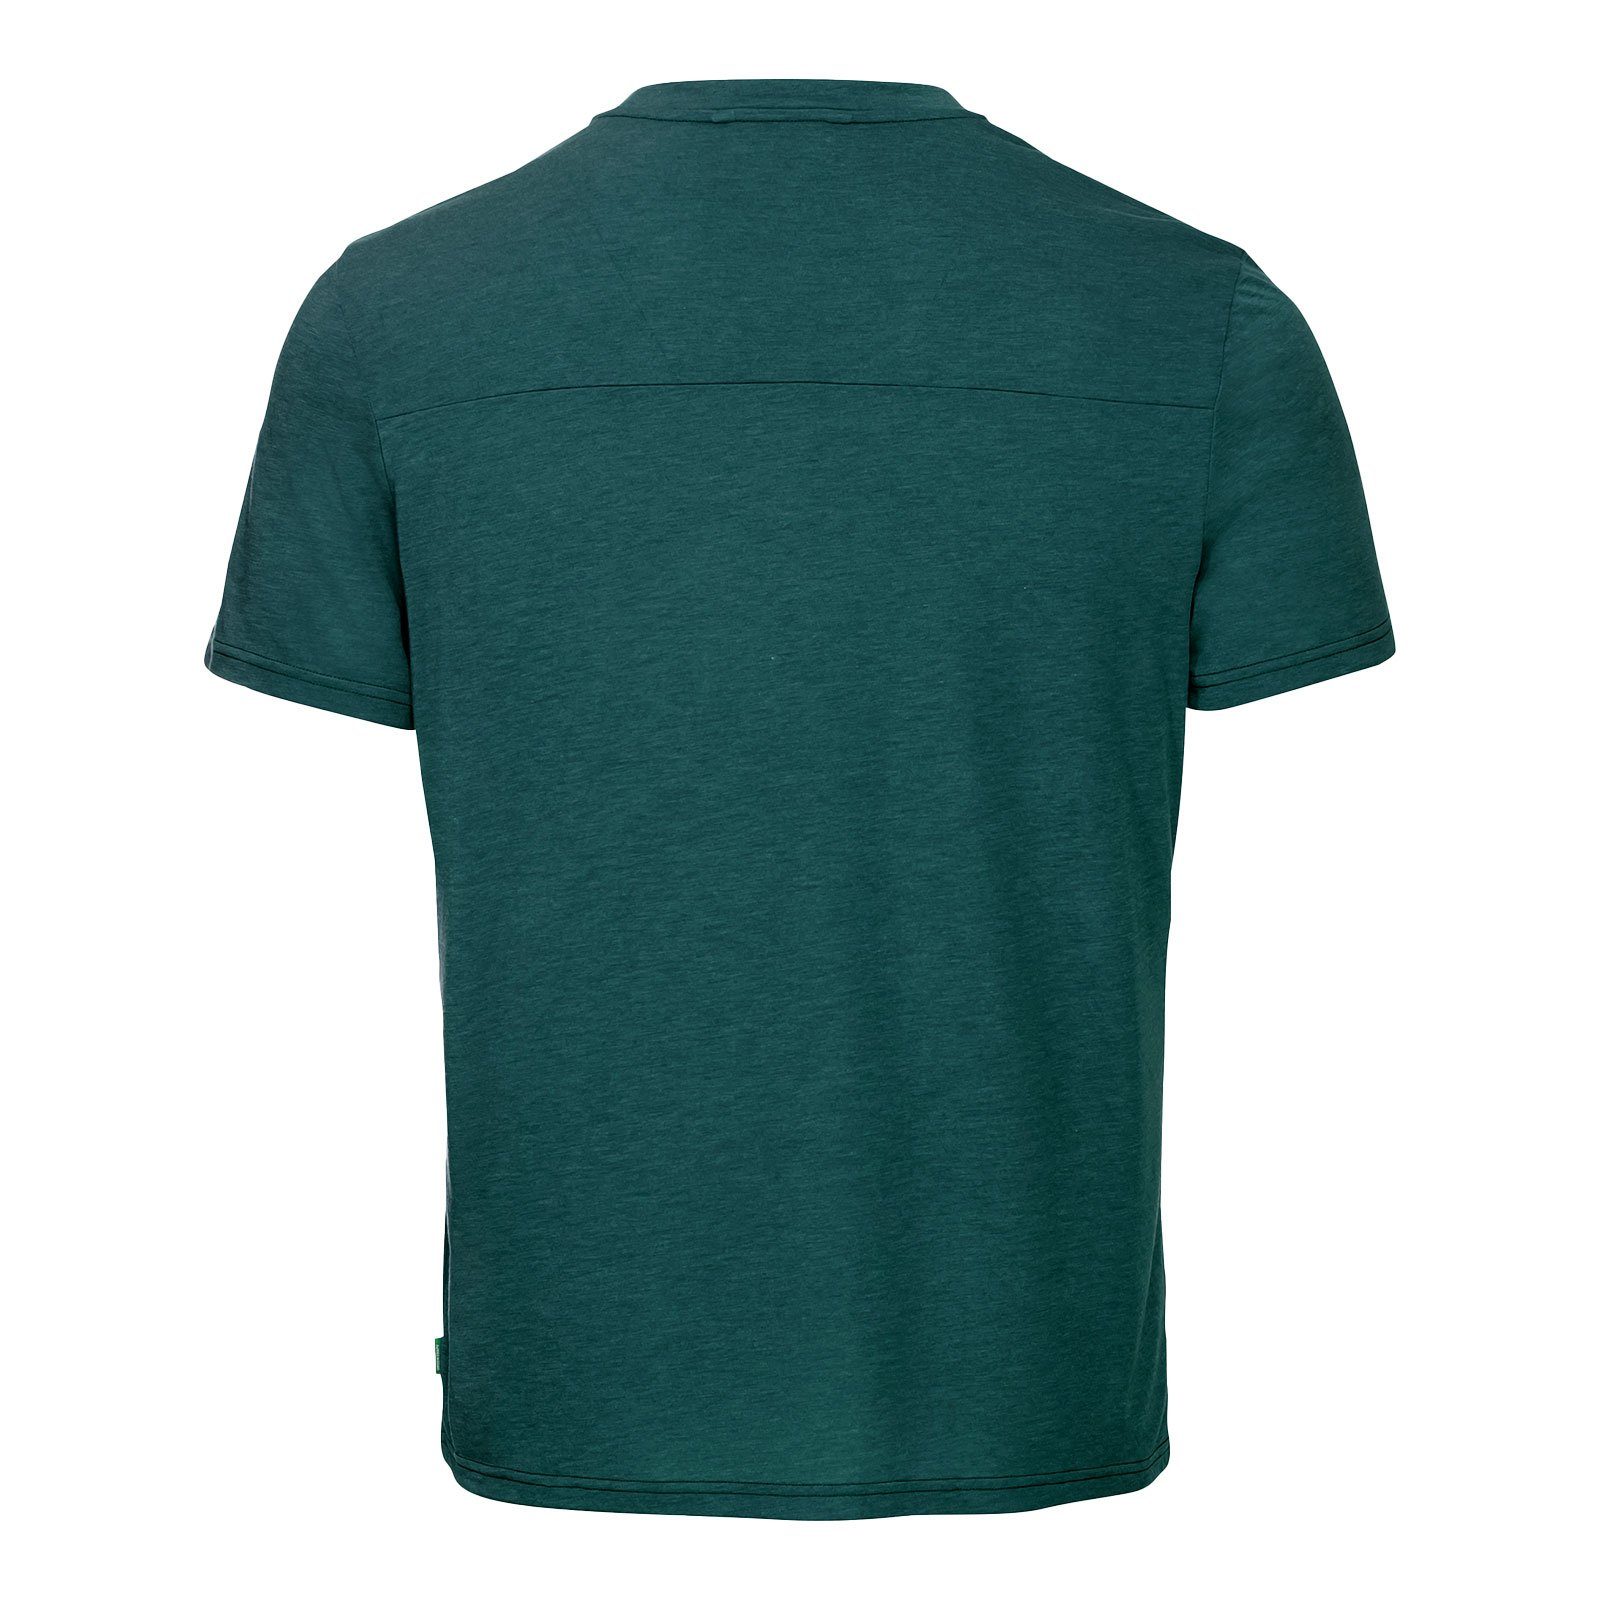 III aus T-Shirt Holzfasern VAUDE T-Shirt 42770-371 hergestellt zu green Tekoa 25% mallard